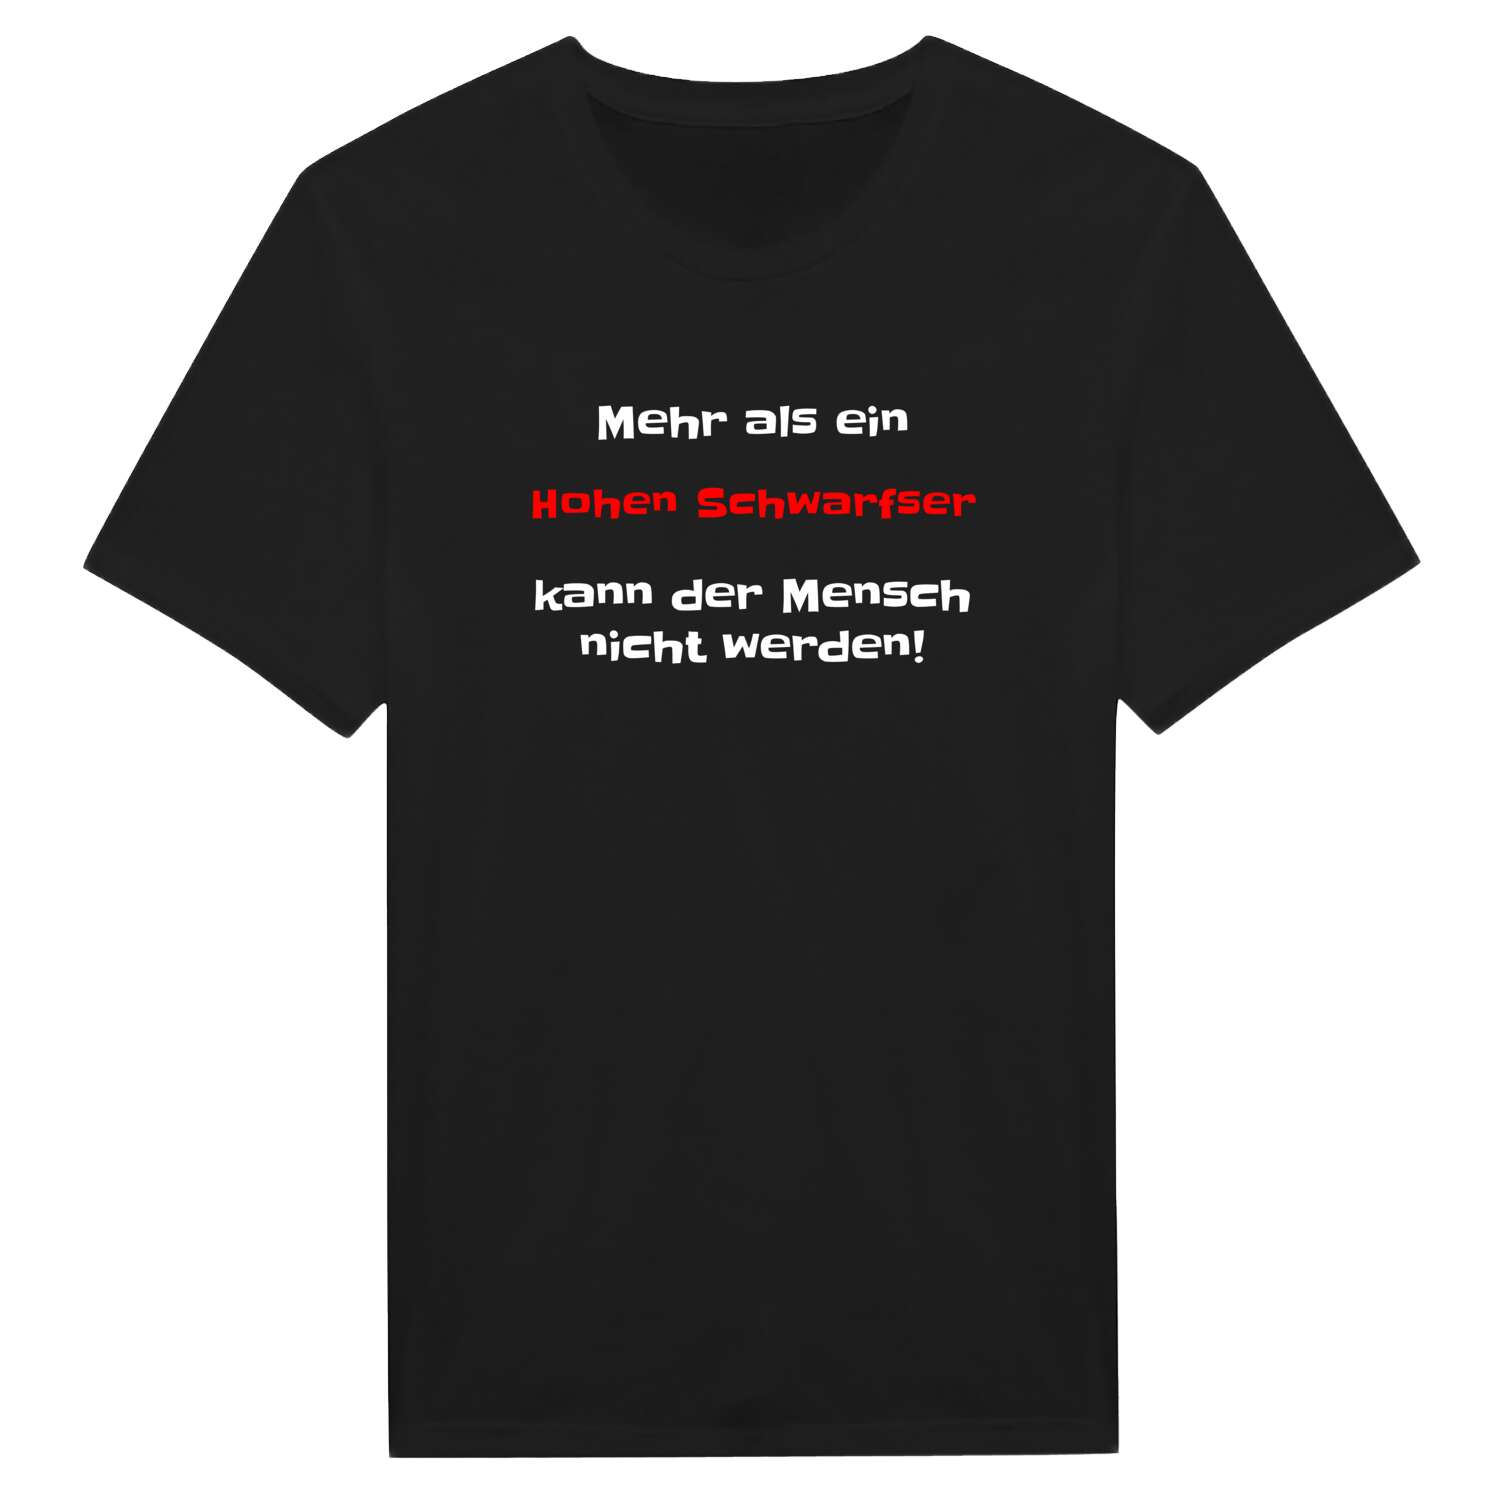 Hohen Schwarfs T-Shirt »Mehr als ein«